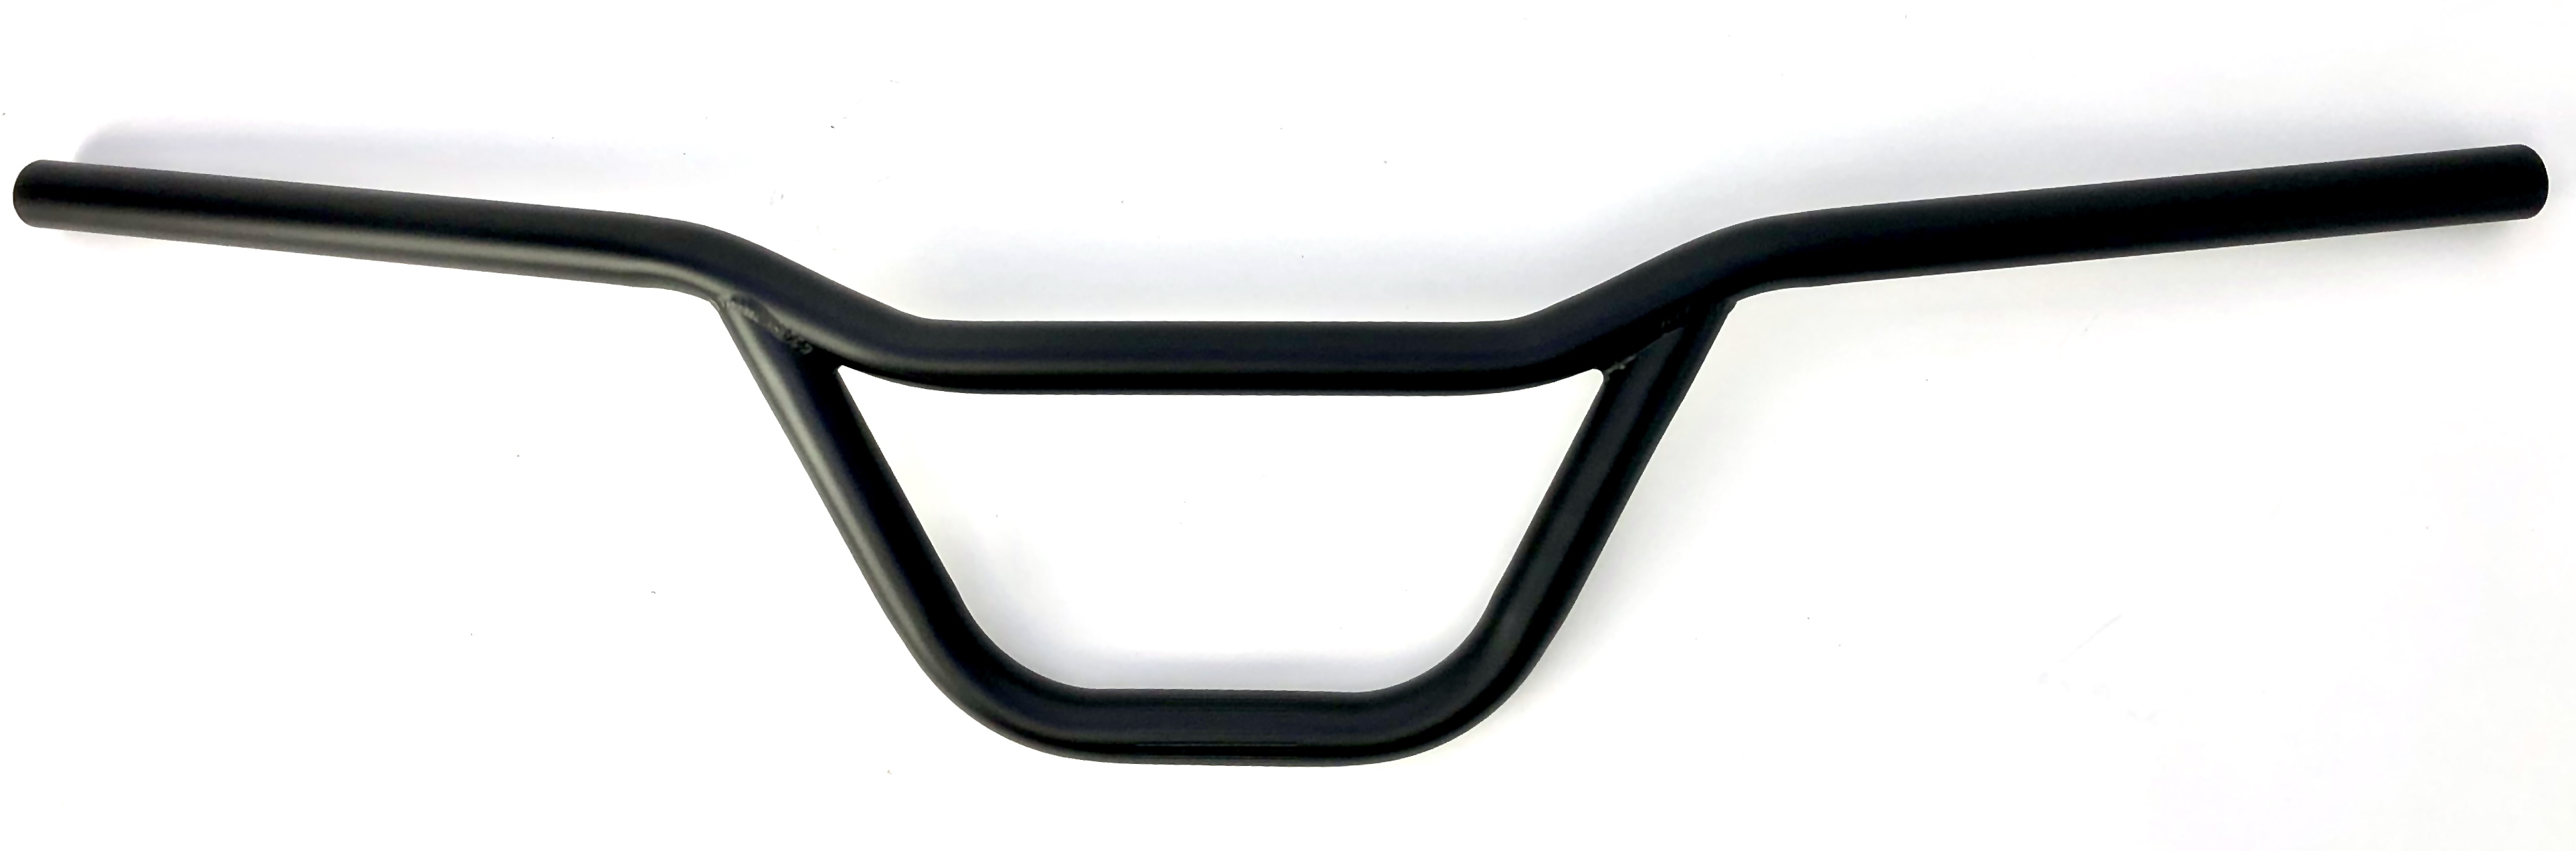 Flat Cross - manubrio largo e piatto in nero opaco forma BMX